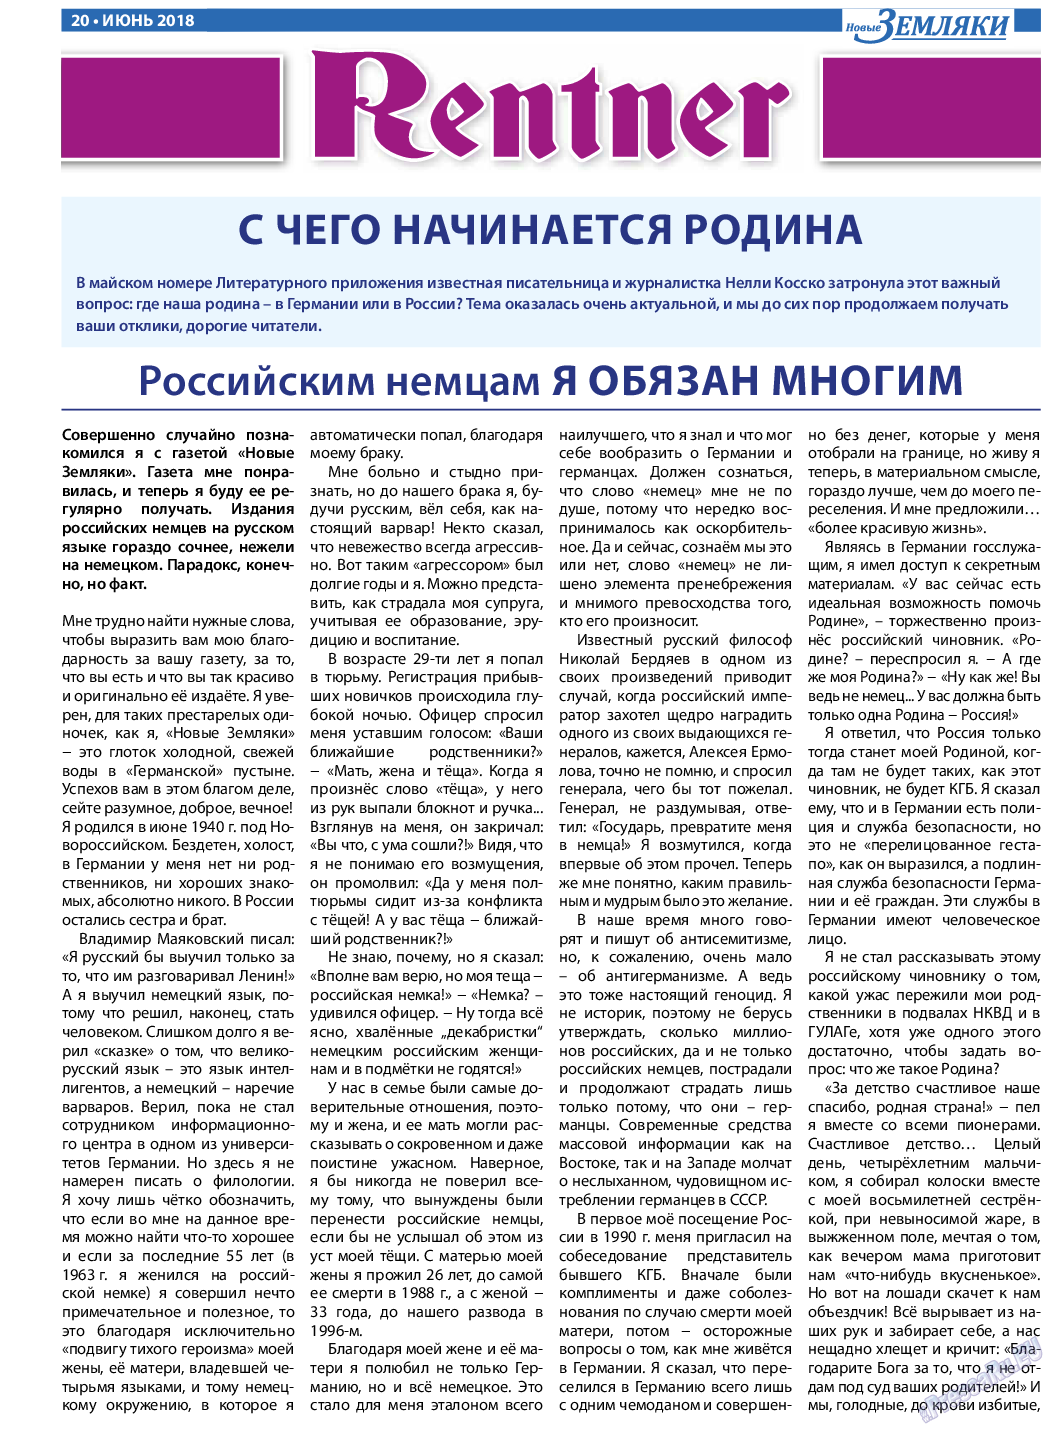 Новые Земляки, газета. 2018 №6 стр.20